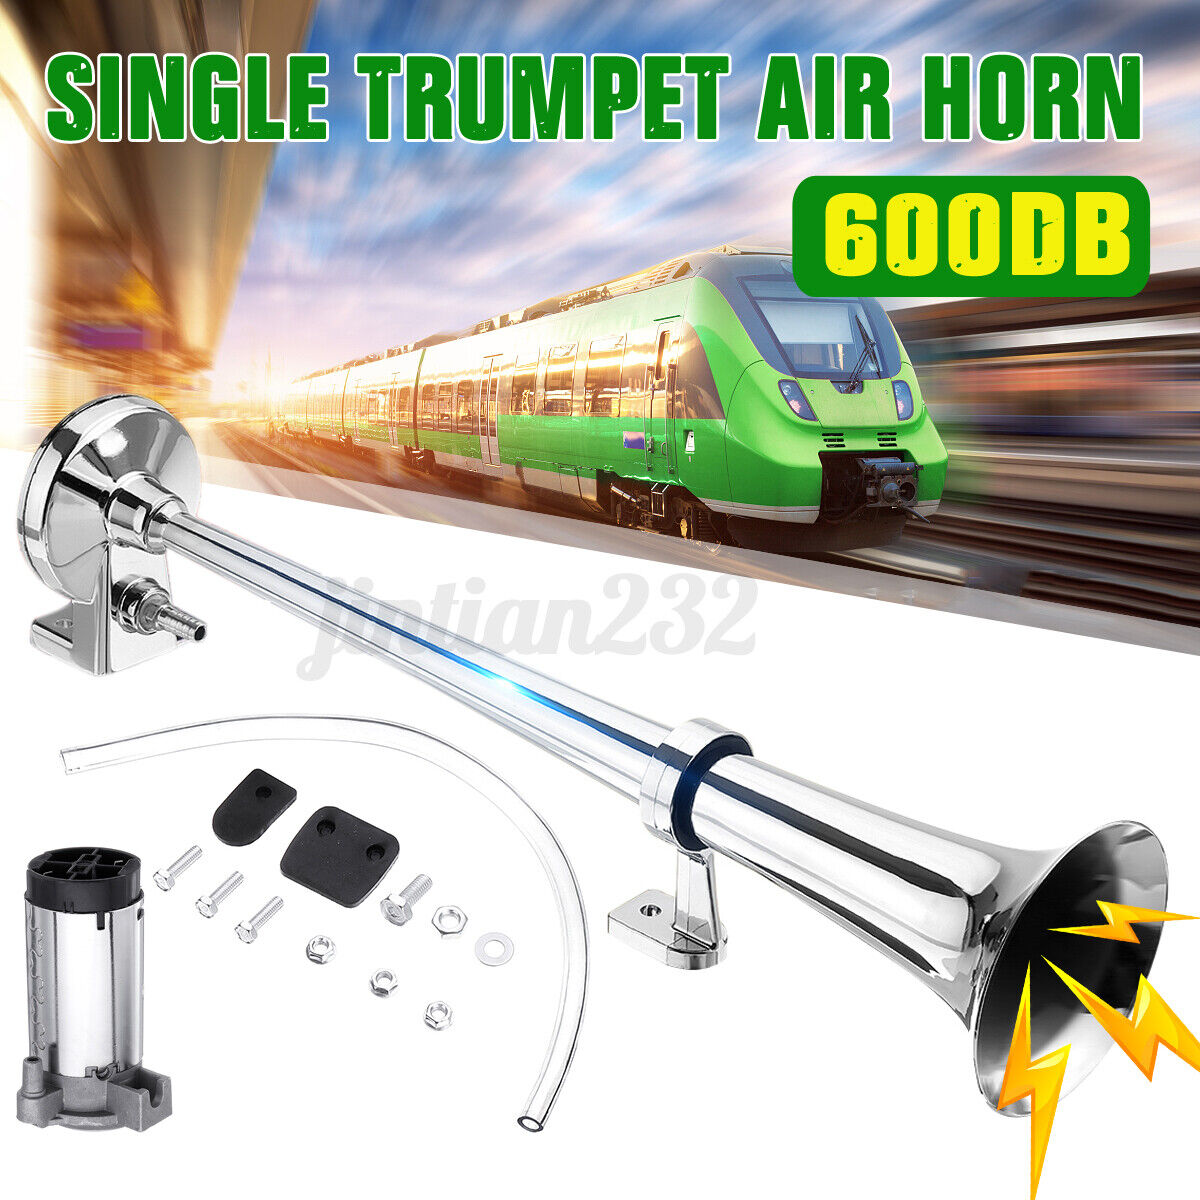 600DB Super Loud Air Horn Compressor Single Trumpet Train Car Truck Boat